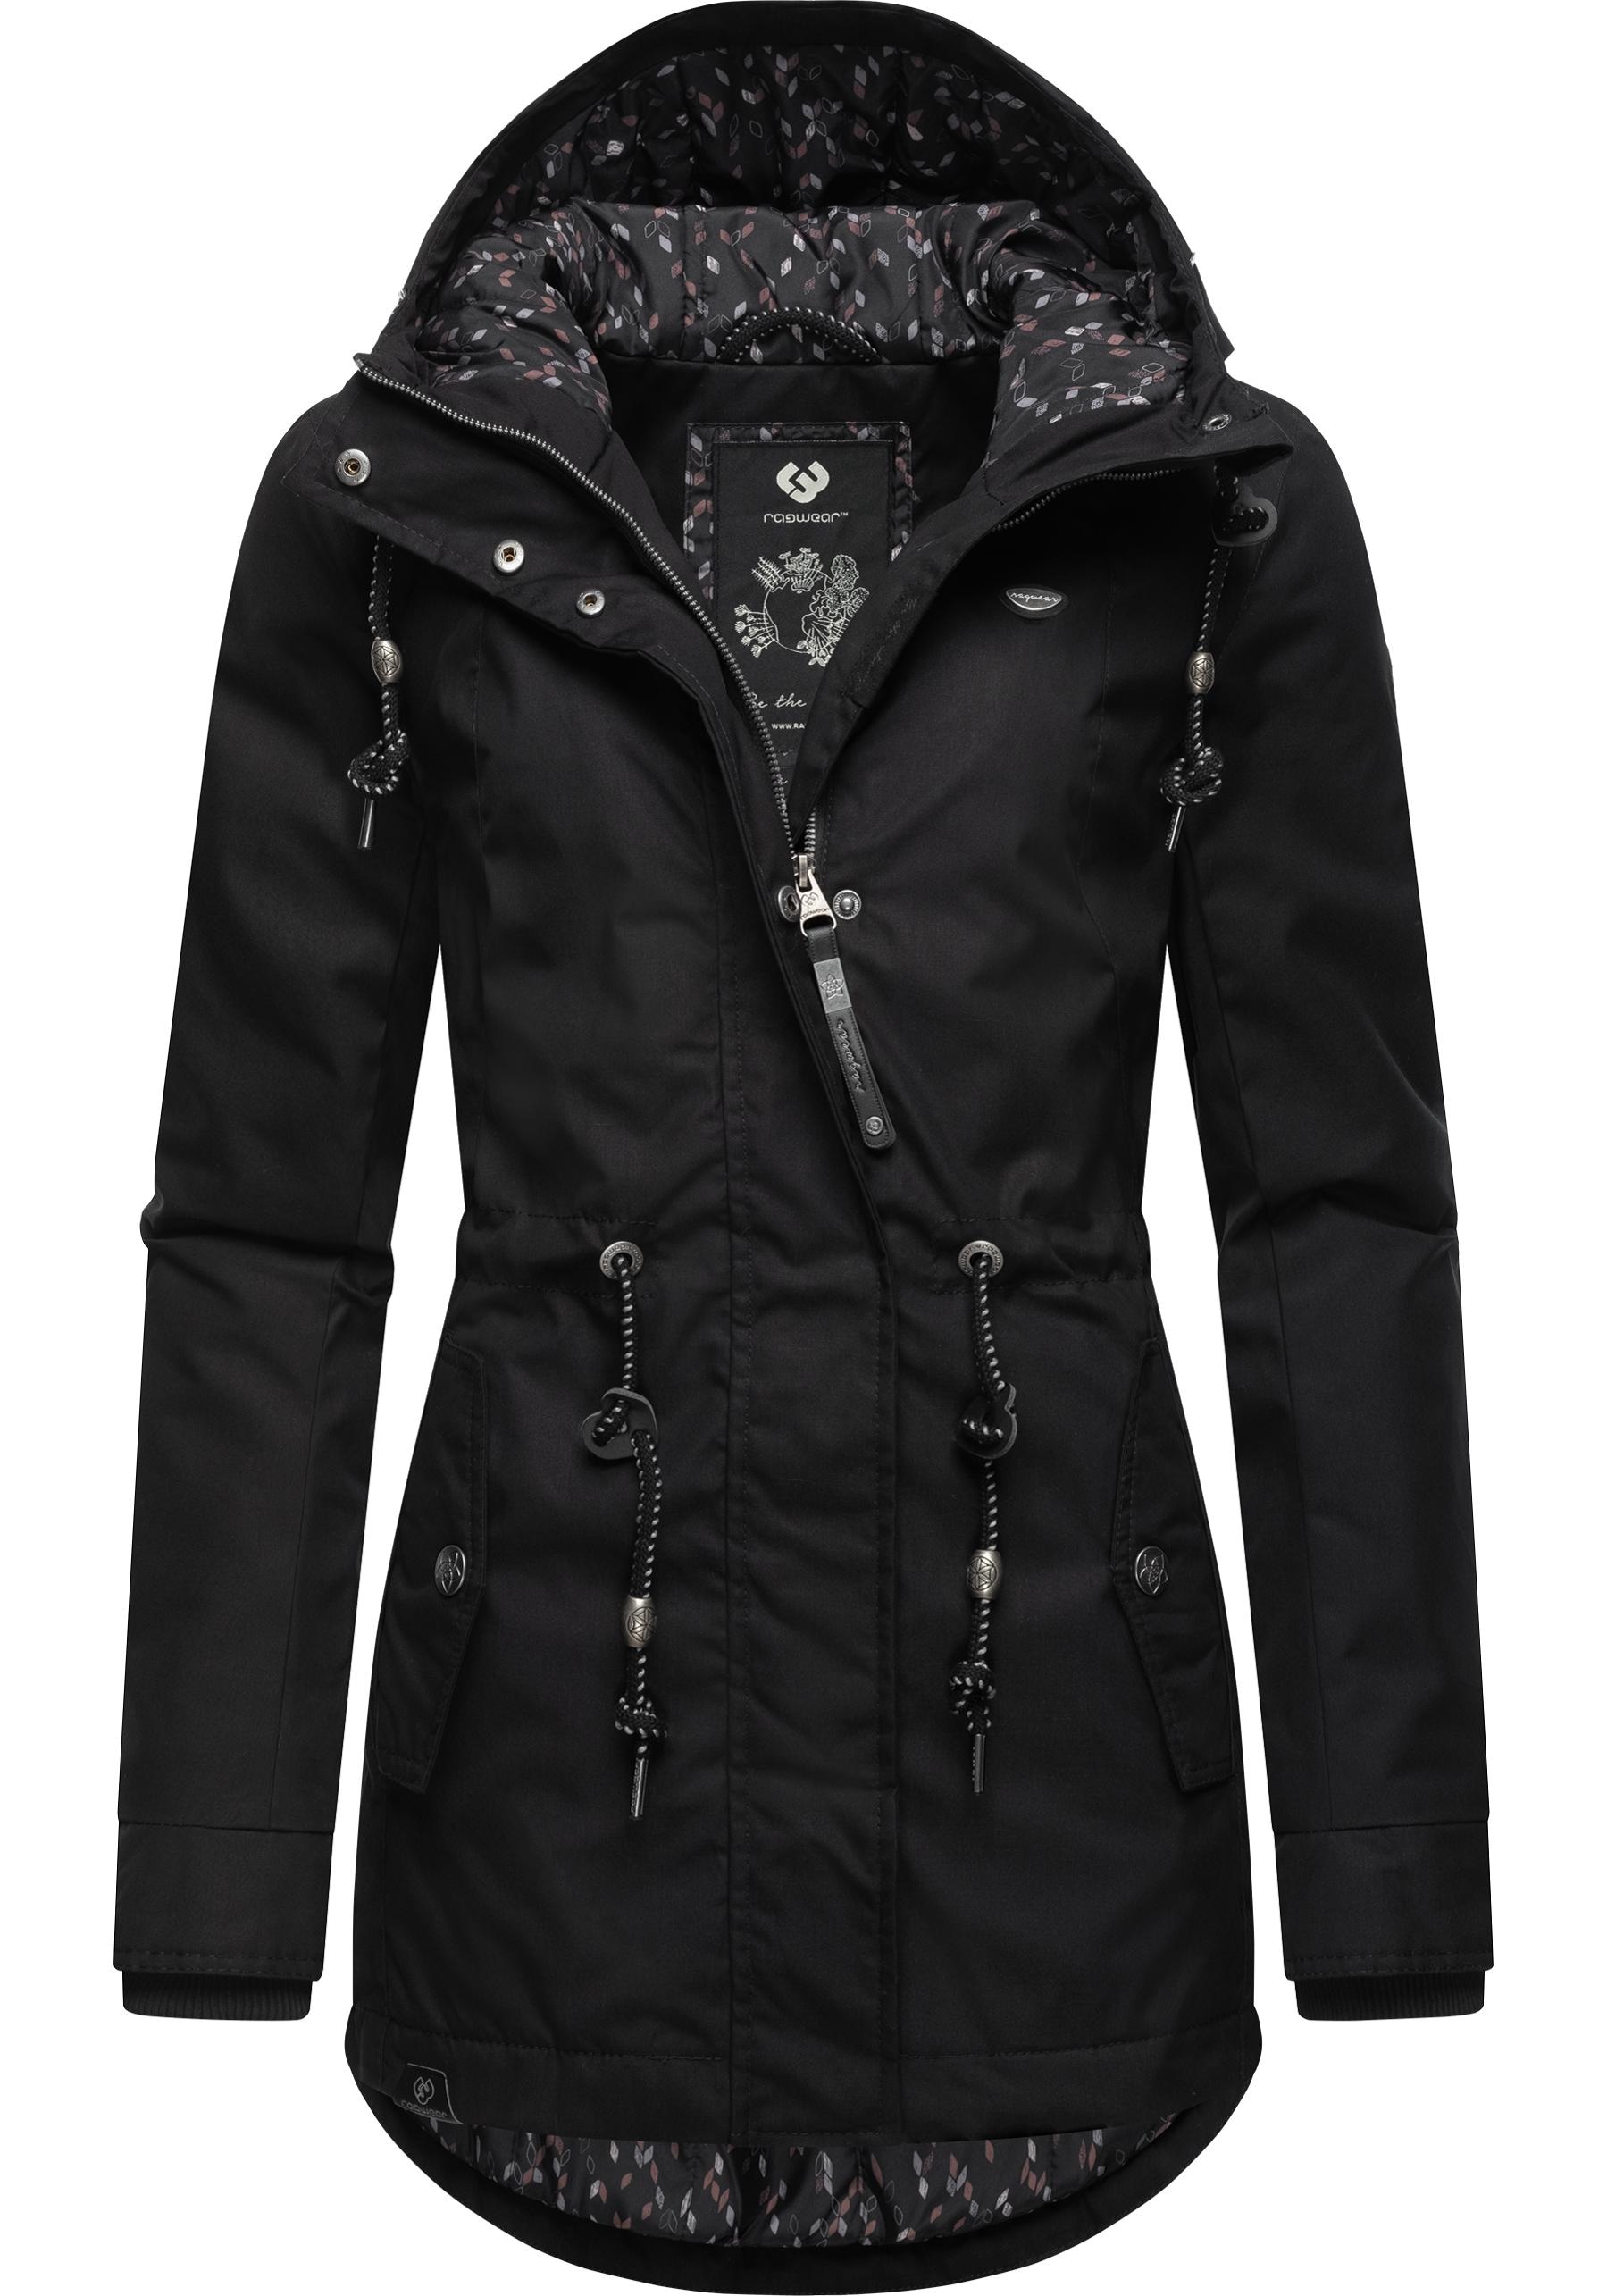 Ragwear Winterjacke »Monadis Black Label«, mit Kapuze, stylischer Winterparka für die kalte Jahreszeit